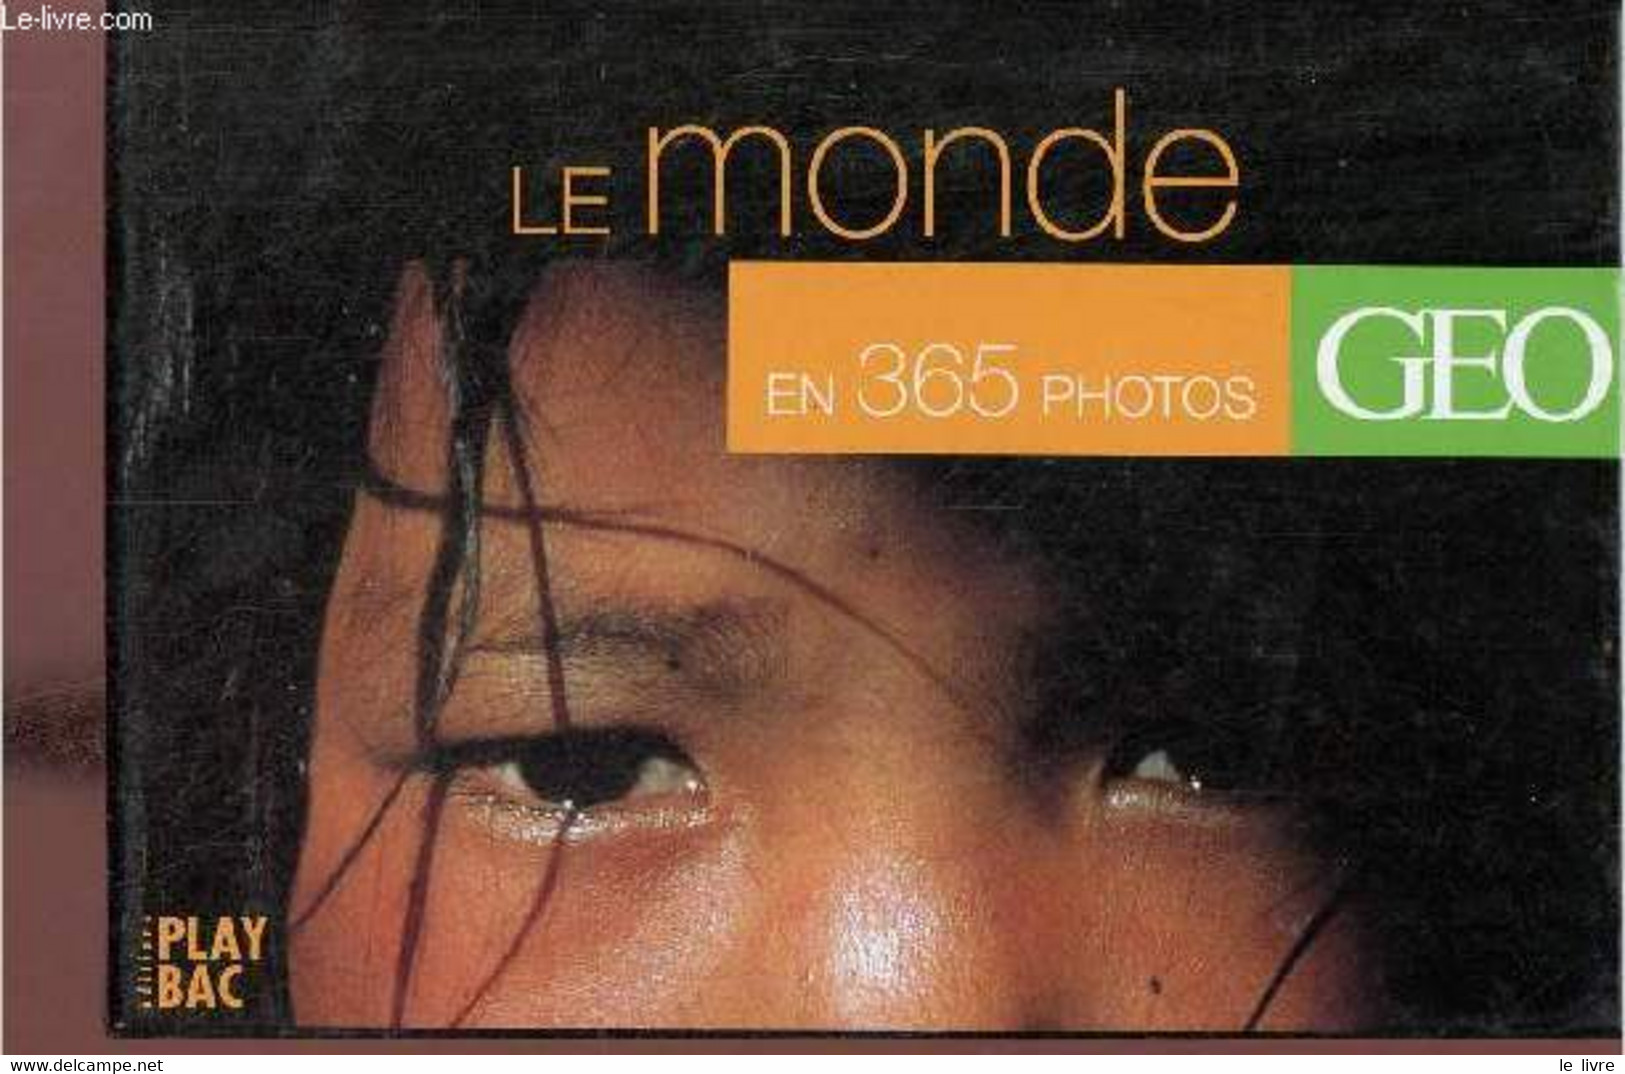 Le Monde En 365 Photos - Geo. - Collectif - 2001 - Agendas & Calendriers